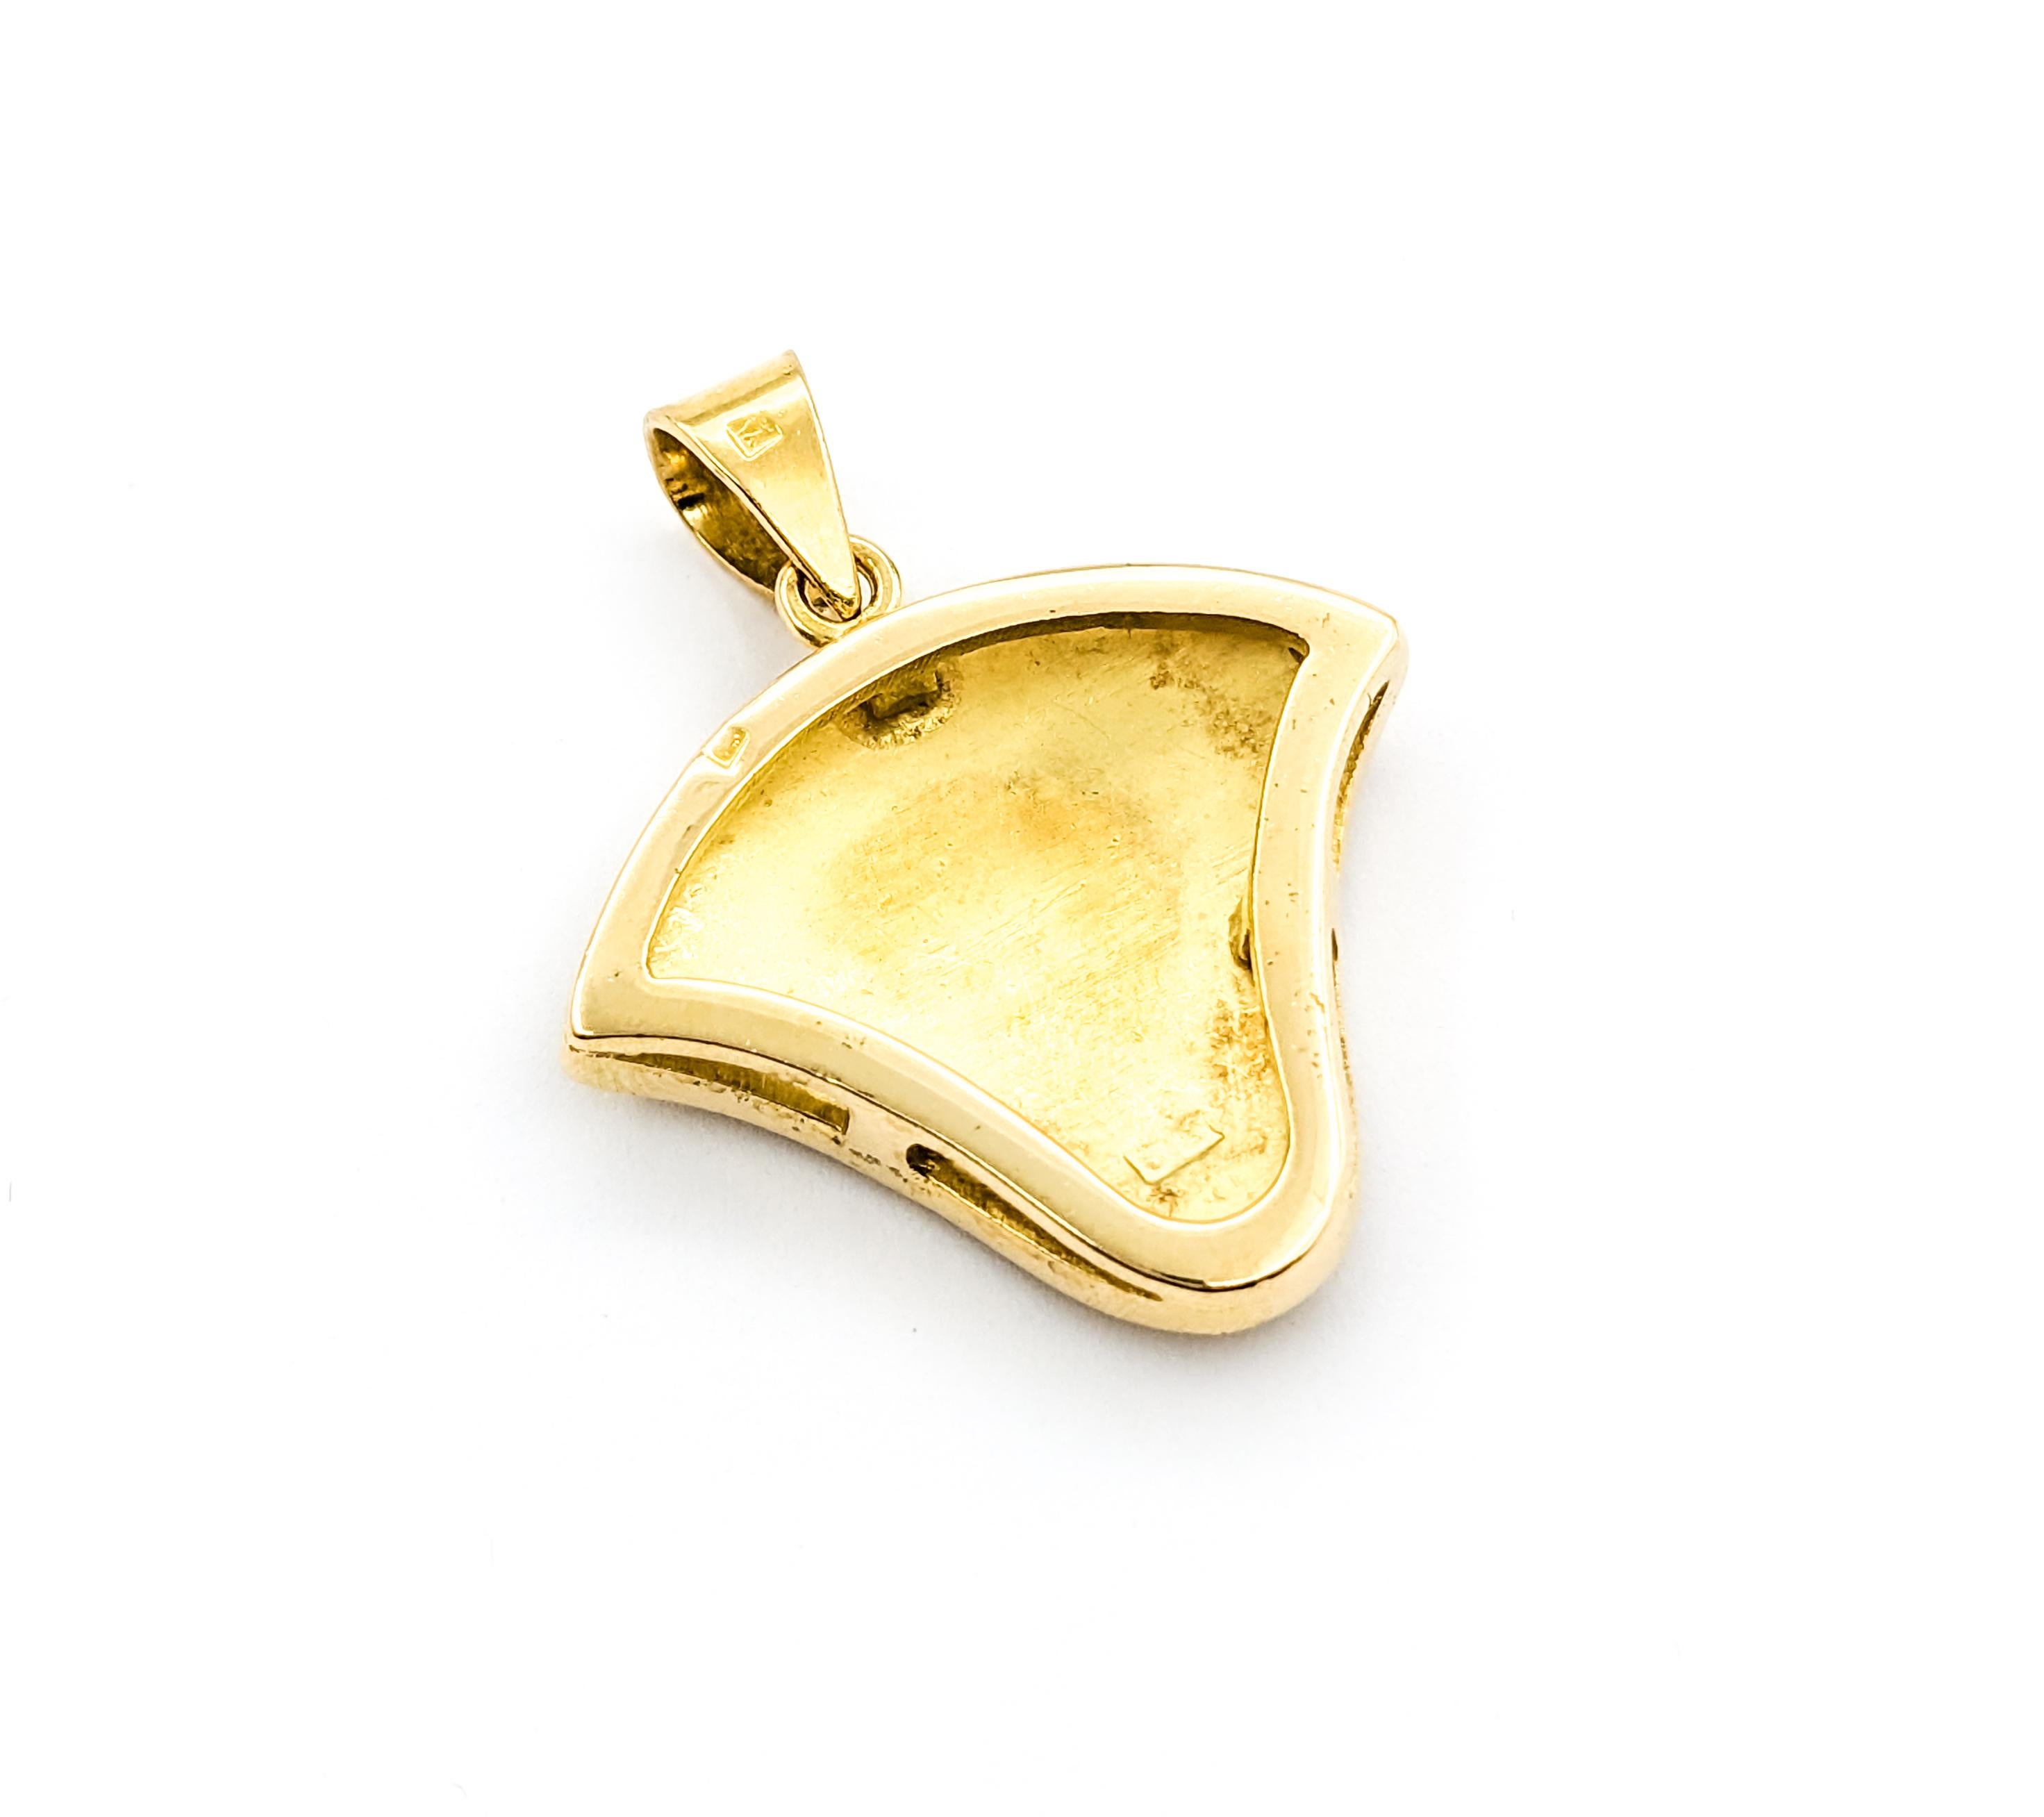 Pendentif Fleur de Lotus en or jaune


Cet exquis pendentif Gold Fashion, réalisé en or jaune 18 carats, prend la forme d'une fleur de lotus, qui symbolise la pureté, l'illumination, l'auto-régénération et la renaissance. Ses dimensions, 34 x 27 mm,